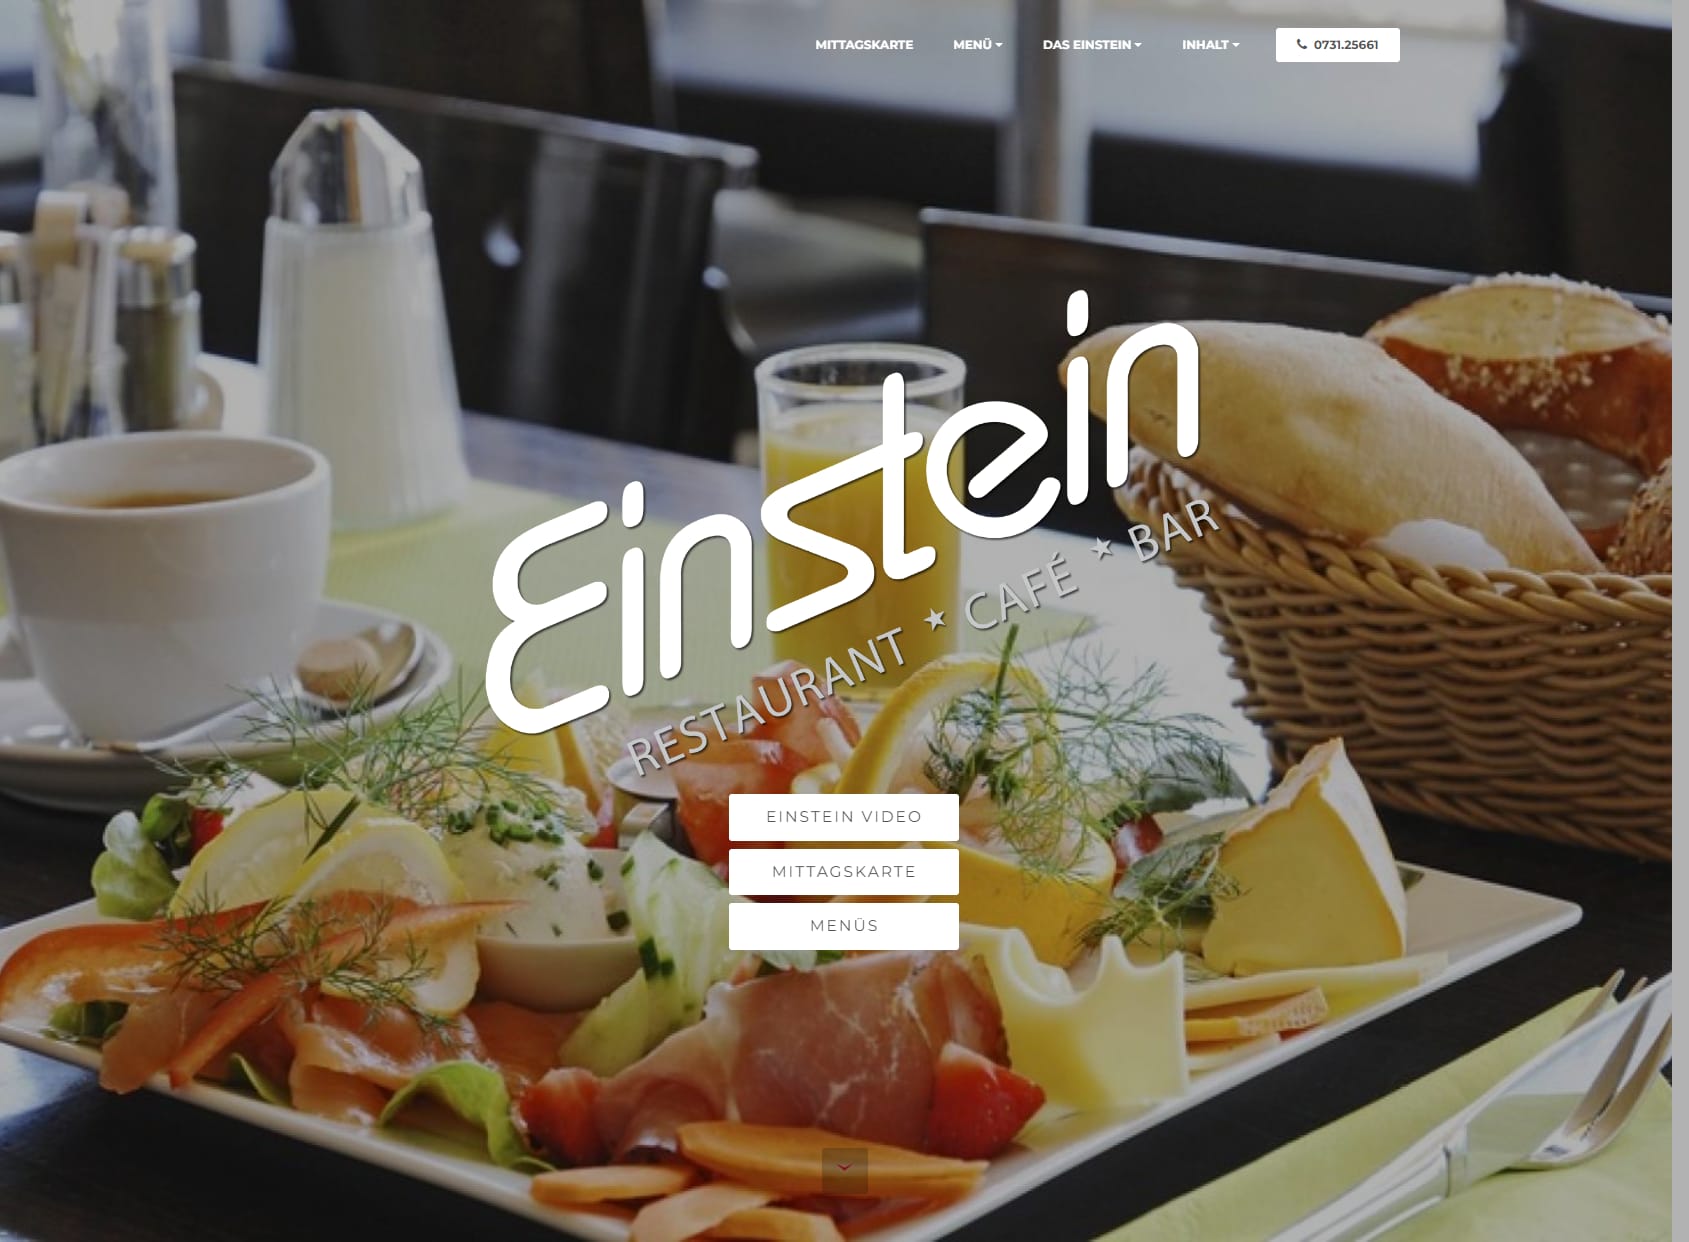 Einstein Restaurant Cafe Bar